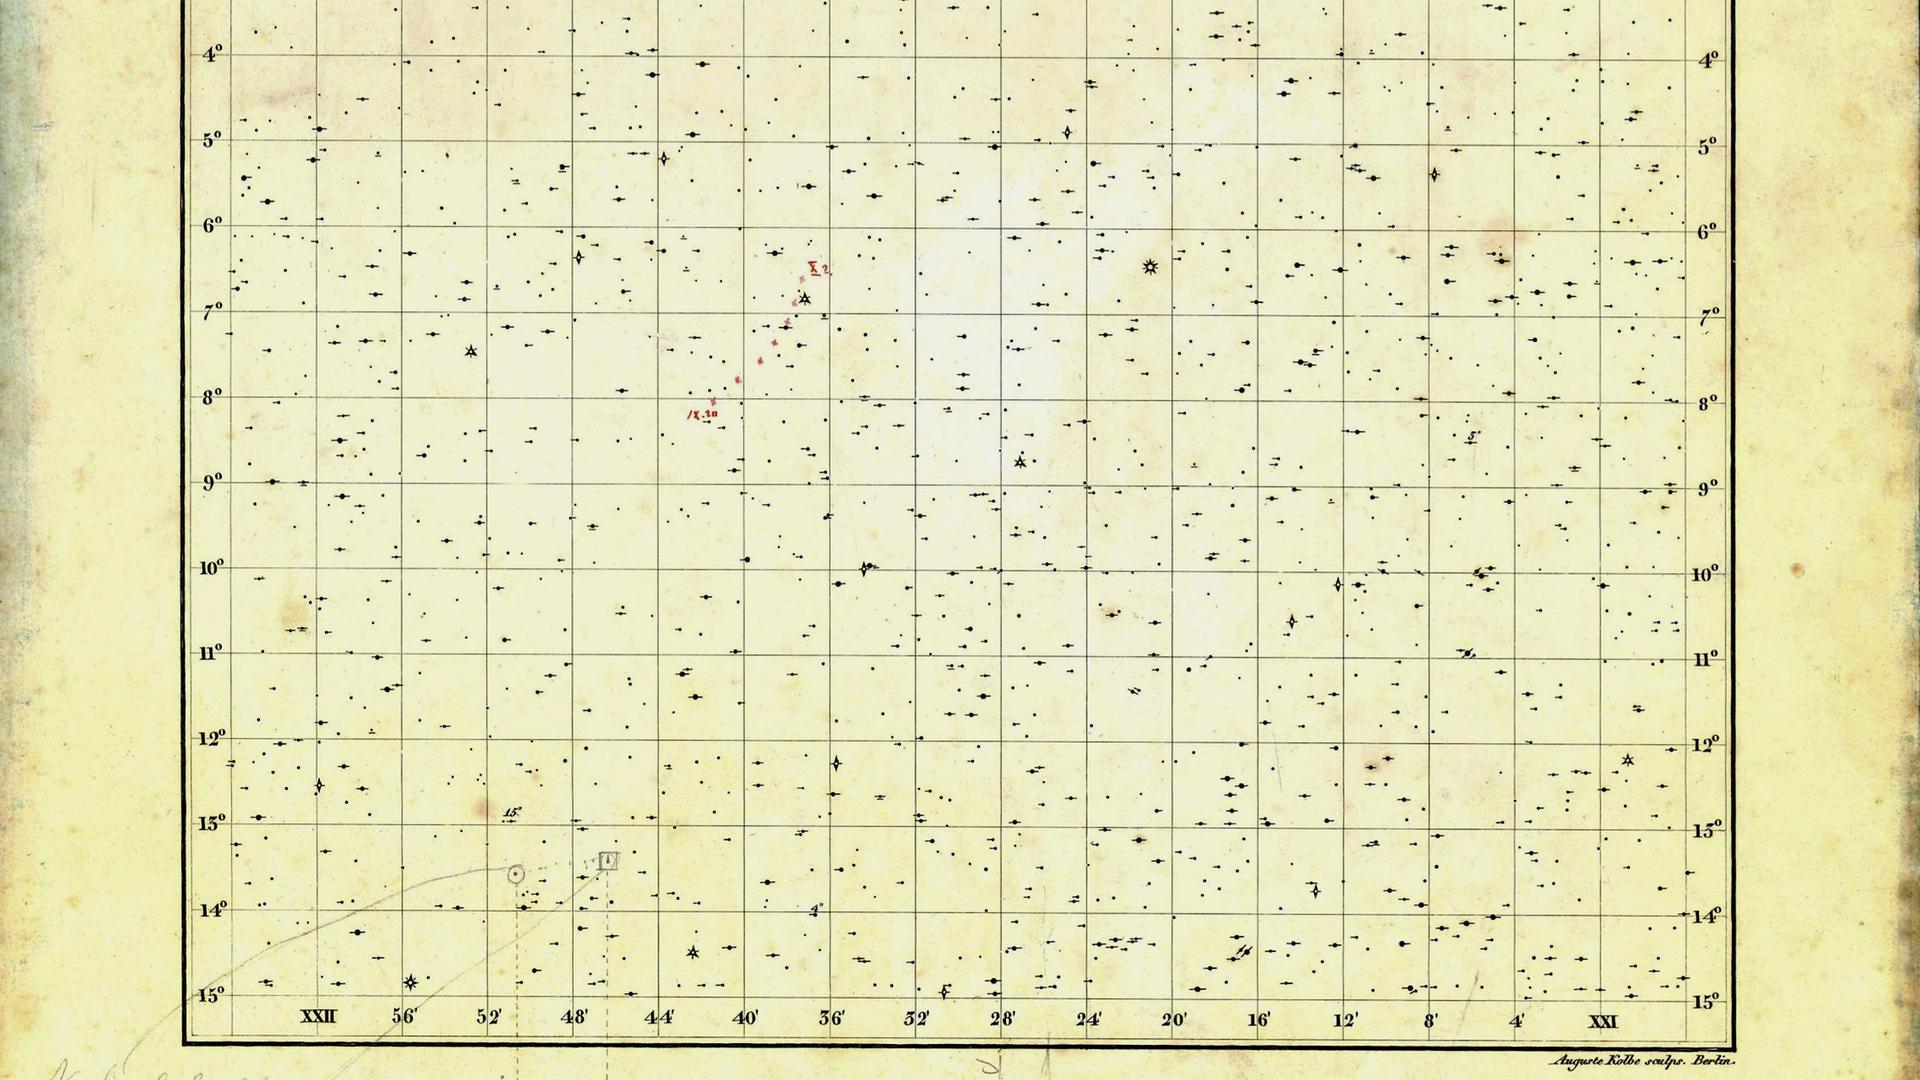 Ausschnitt der Himmelskarte, mit deren Hilfe Johann Gottfried Galle Neptun entdeckte. Der vorhergesagte (Quadrat) und der beobachtete Ort (Kreis) wurden mit Bleistift notiert, angeblich von Galle, aber erst einige Zeit nach der Entdeckung.